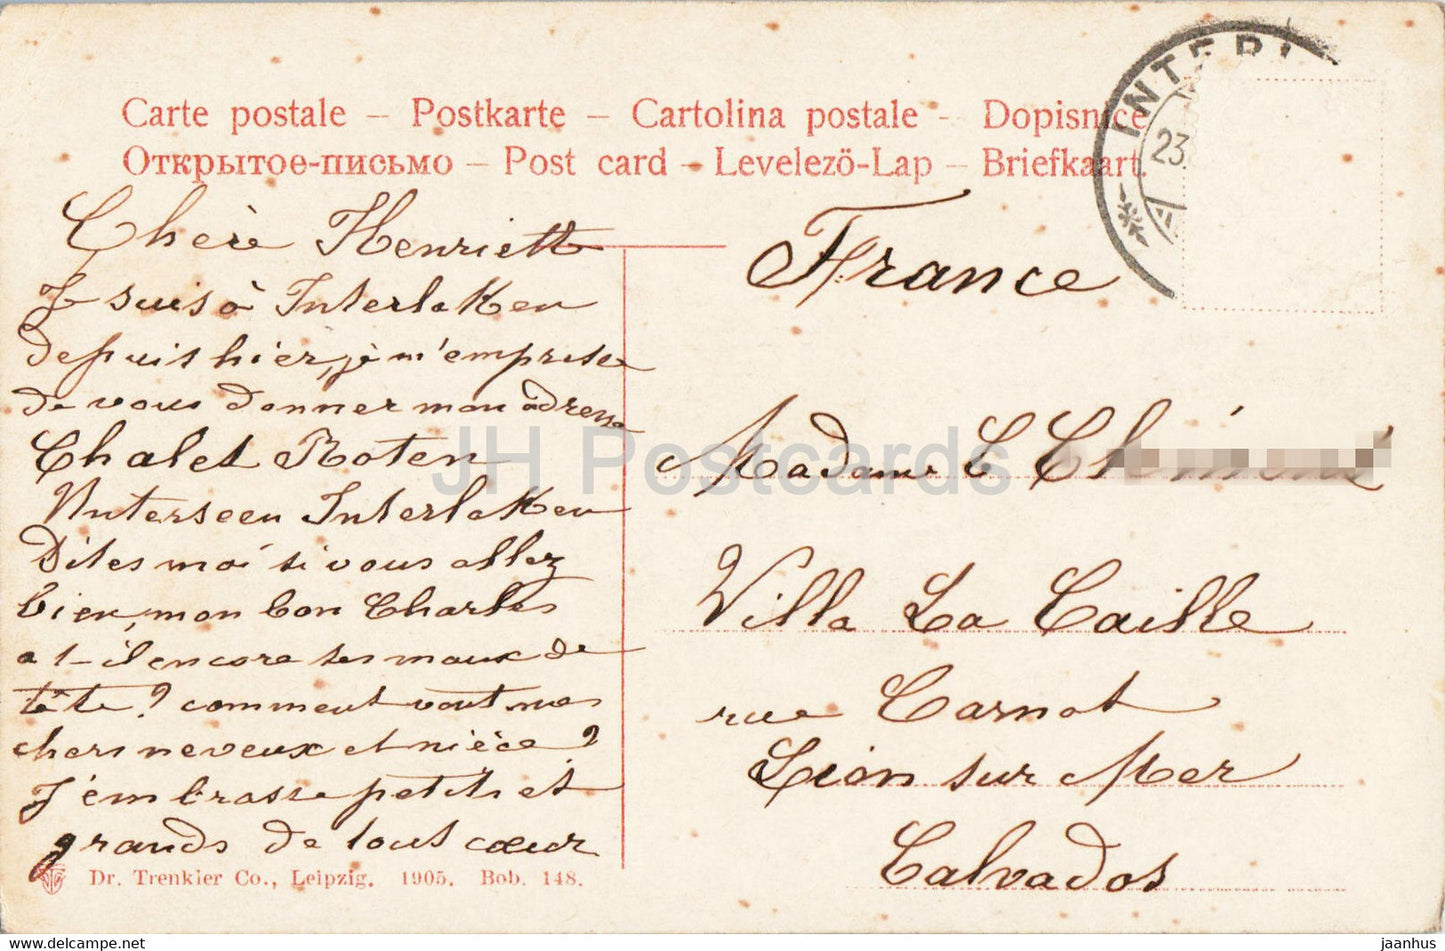 Interlaken - Marktgasse - carte postale ancienne - 1905 - Suisse - utilisé